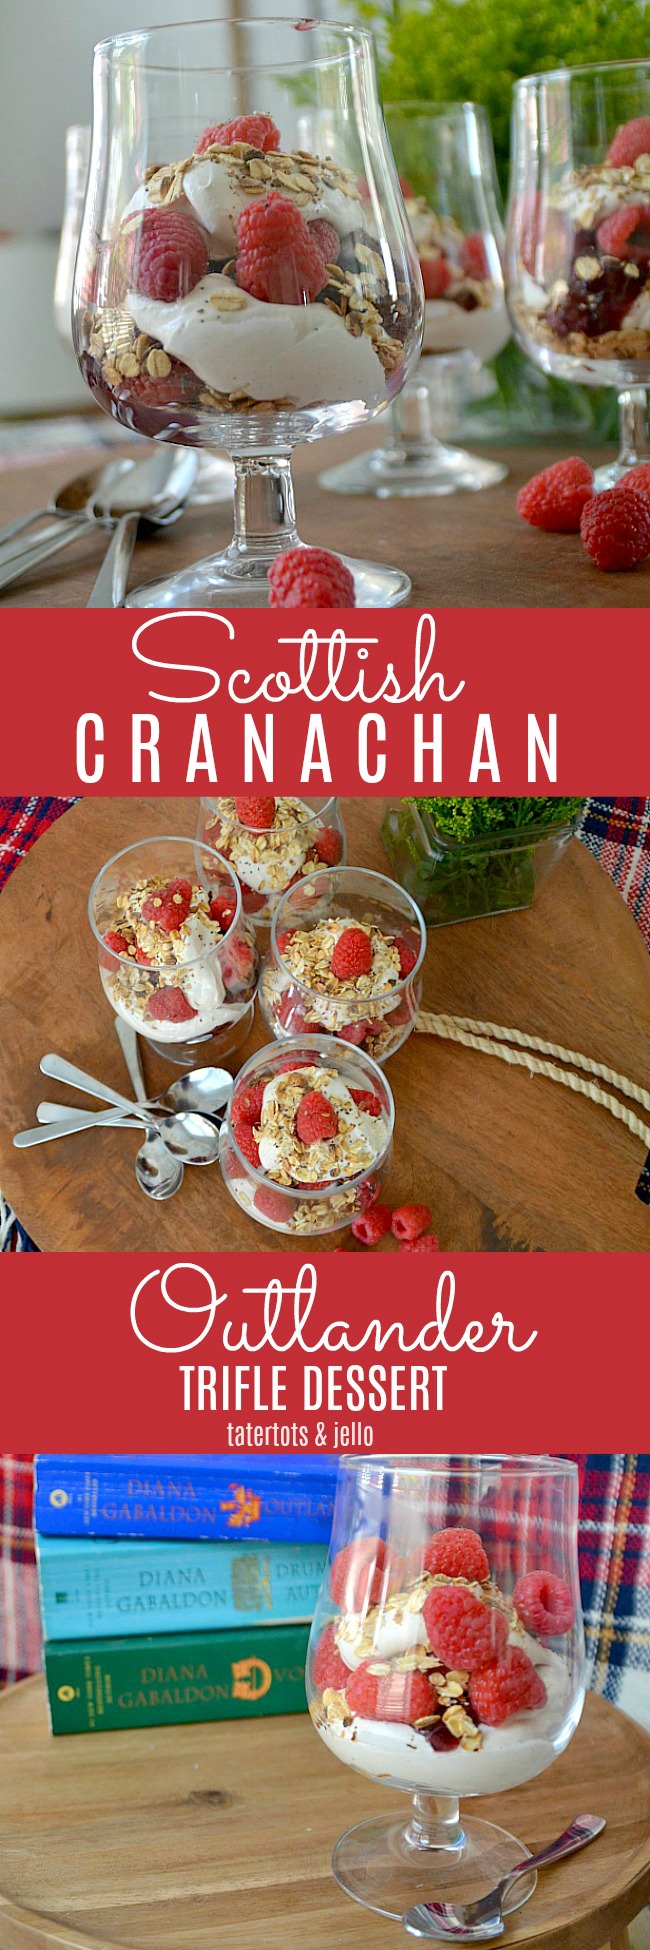 Outlander Scottish Cranachan Trifle Dessert 